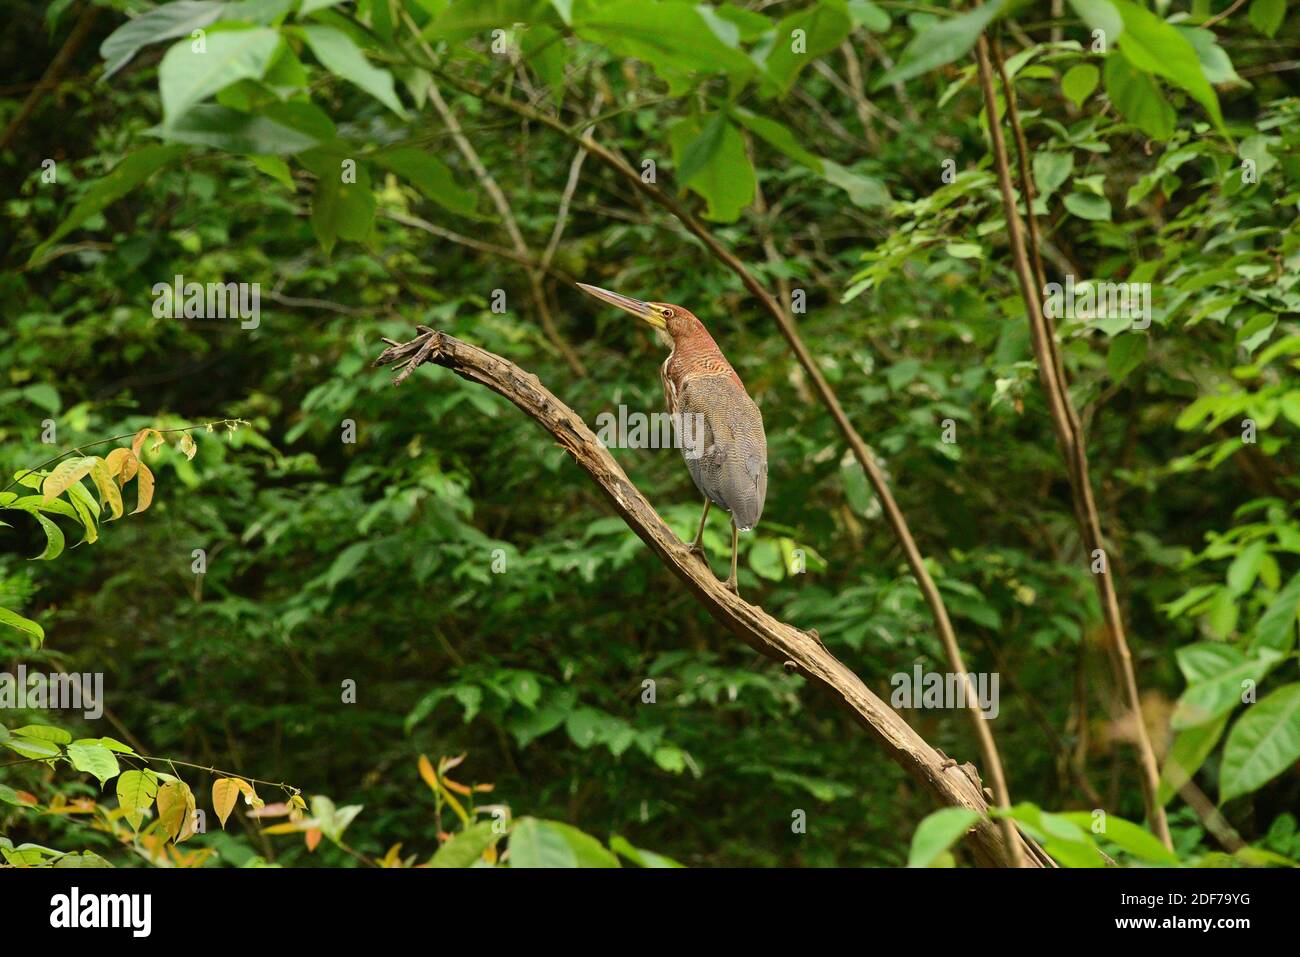 Rufecent Tigerreiher (Tigrisoma lineatum) ist eine Art Reiher aus Mittel- und Südamerika. Dieses Foto wurde in der Nähe von Manaus, Brasilien, aufgenommen. Stockfoto